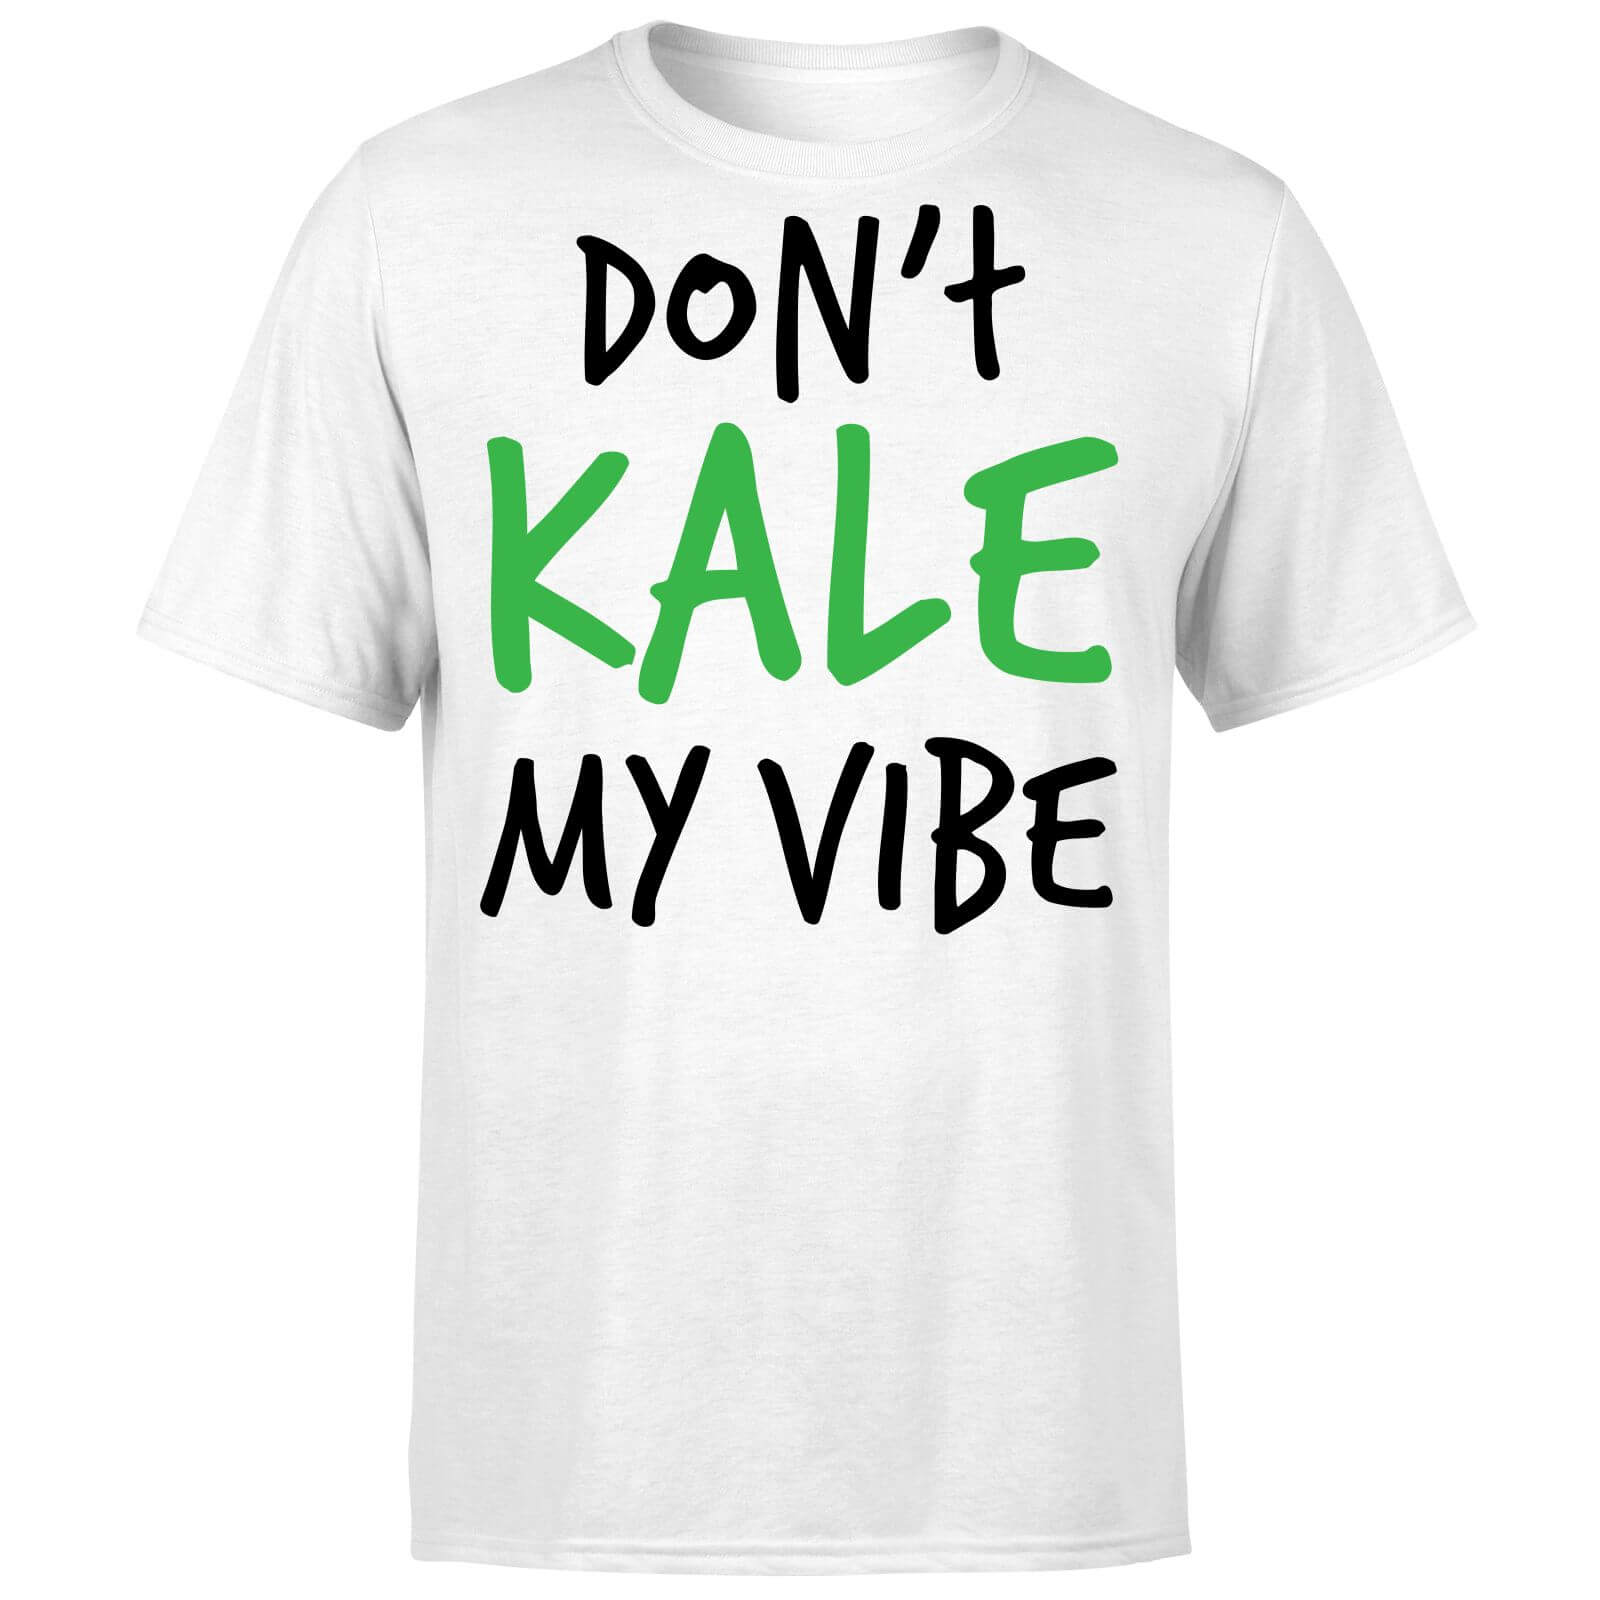 Dont Kale my Vibe T-Shirt - White - XL - White